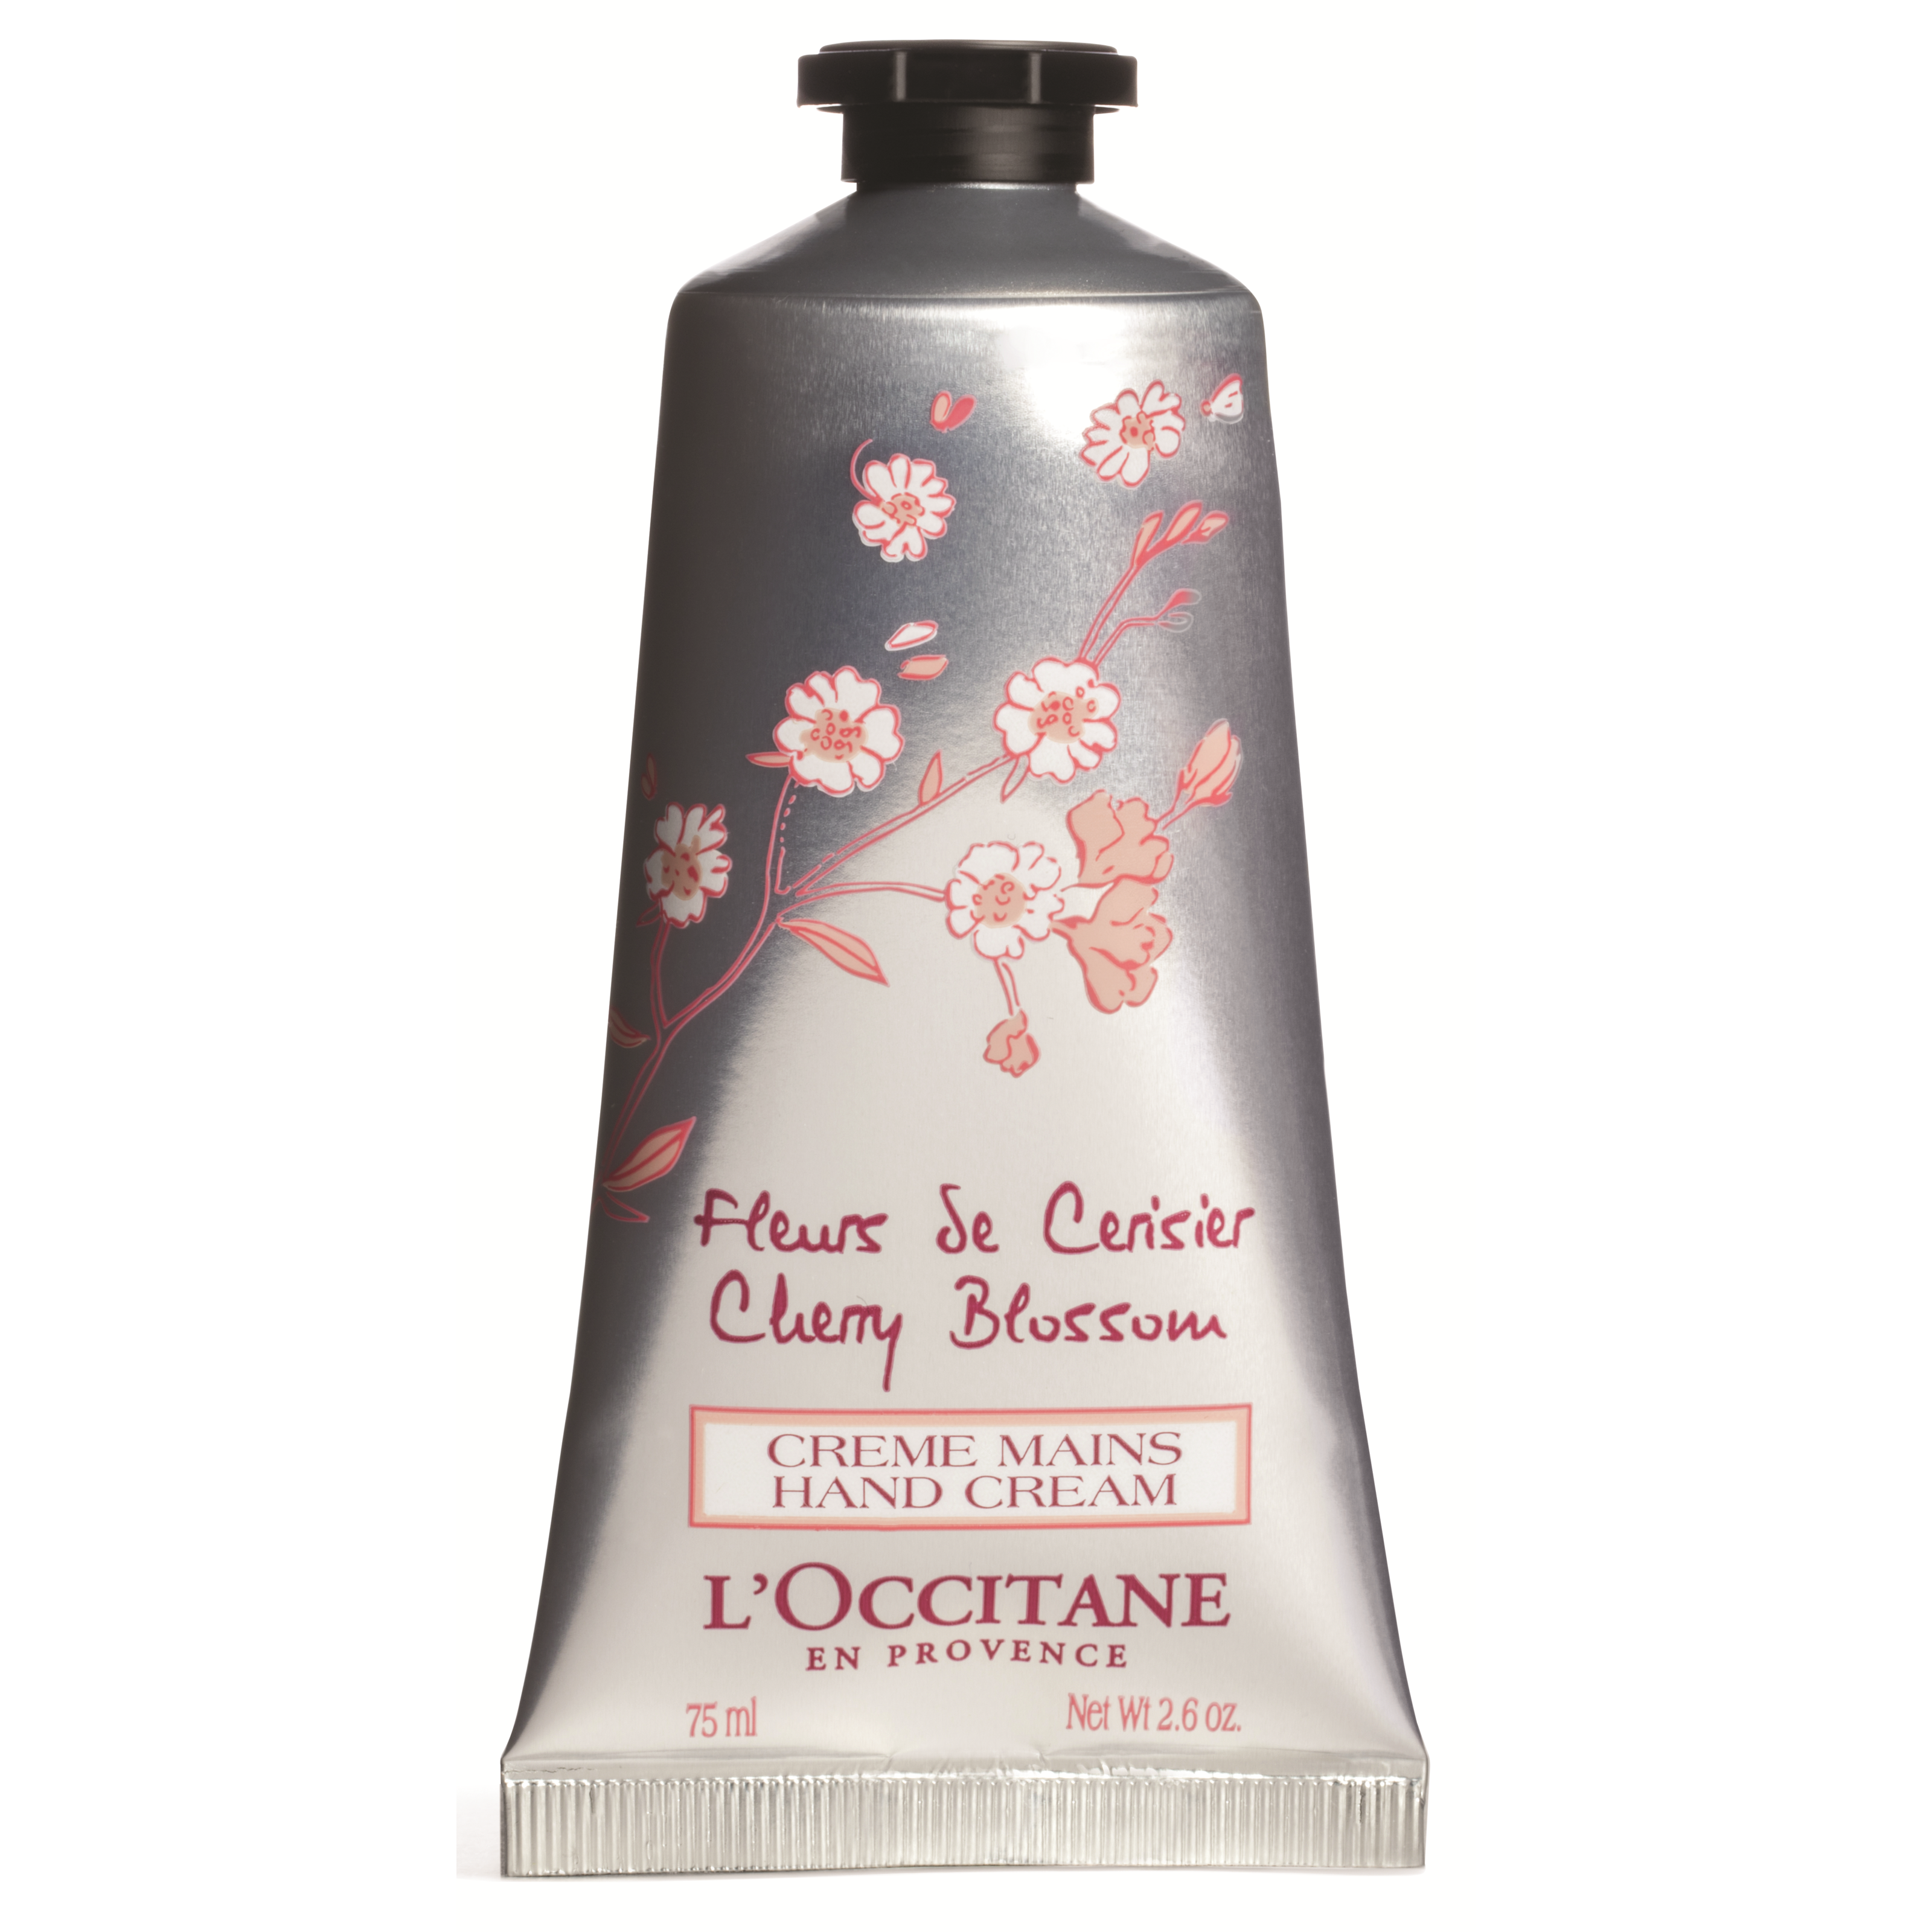 LOccitane Fleurs de Cerisier Cherry Blossom Hand Cream 75 ml